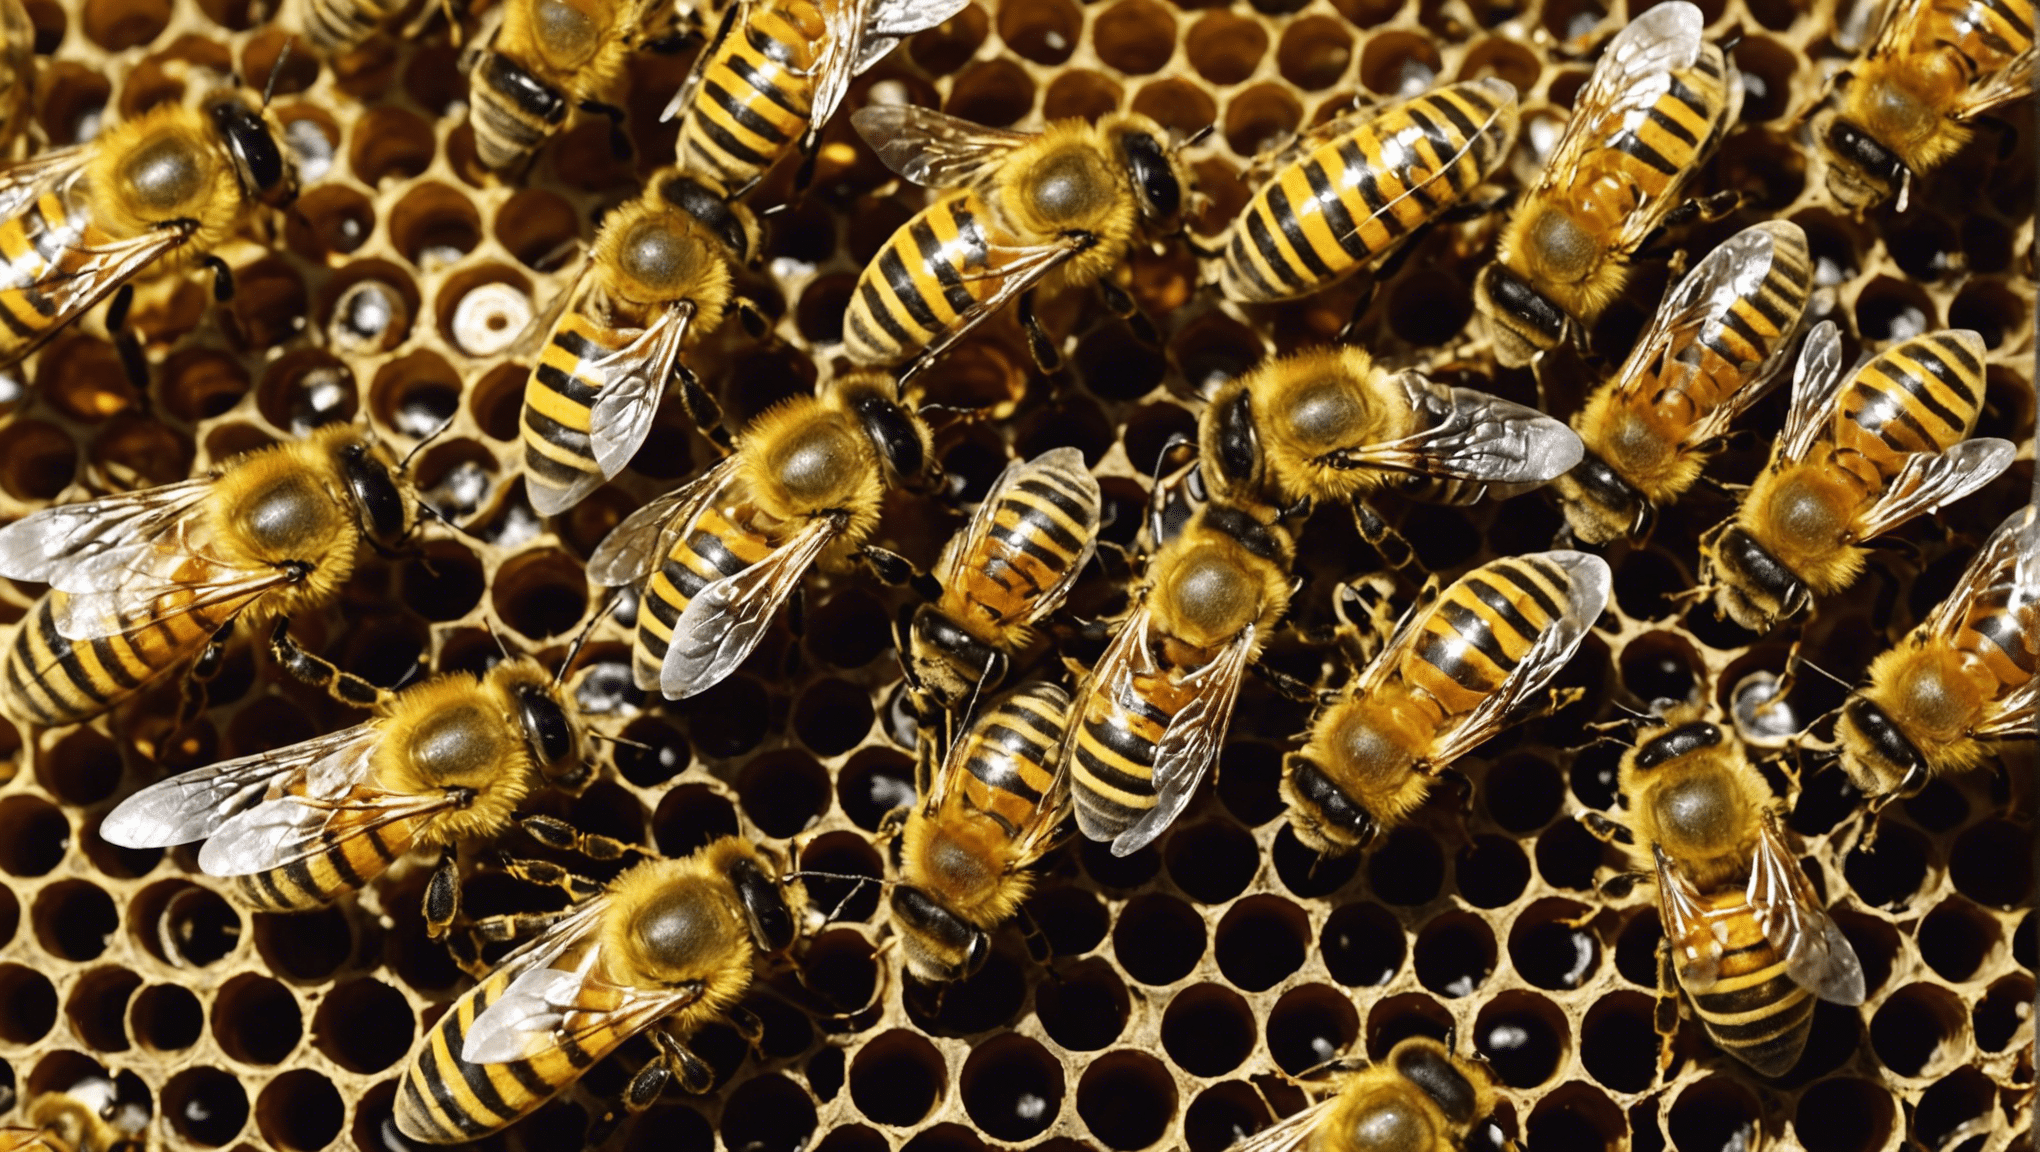 découvrez pourquoi la vie des abeilles est si fabuleuse et essentielle à notre écosystème dans cet article captivant.